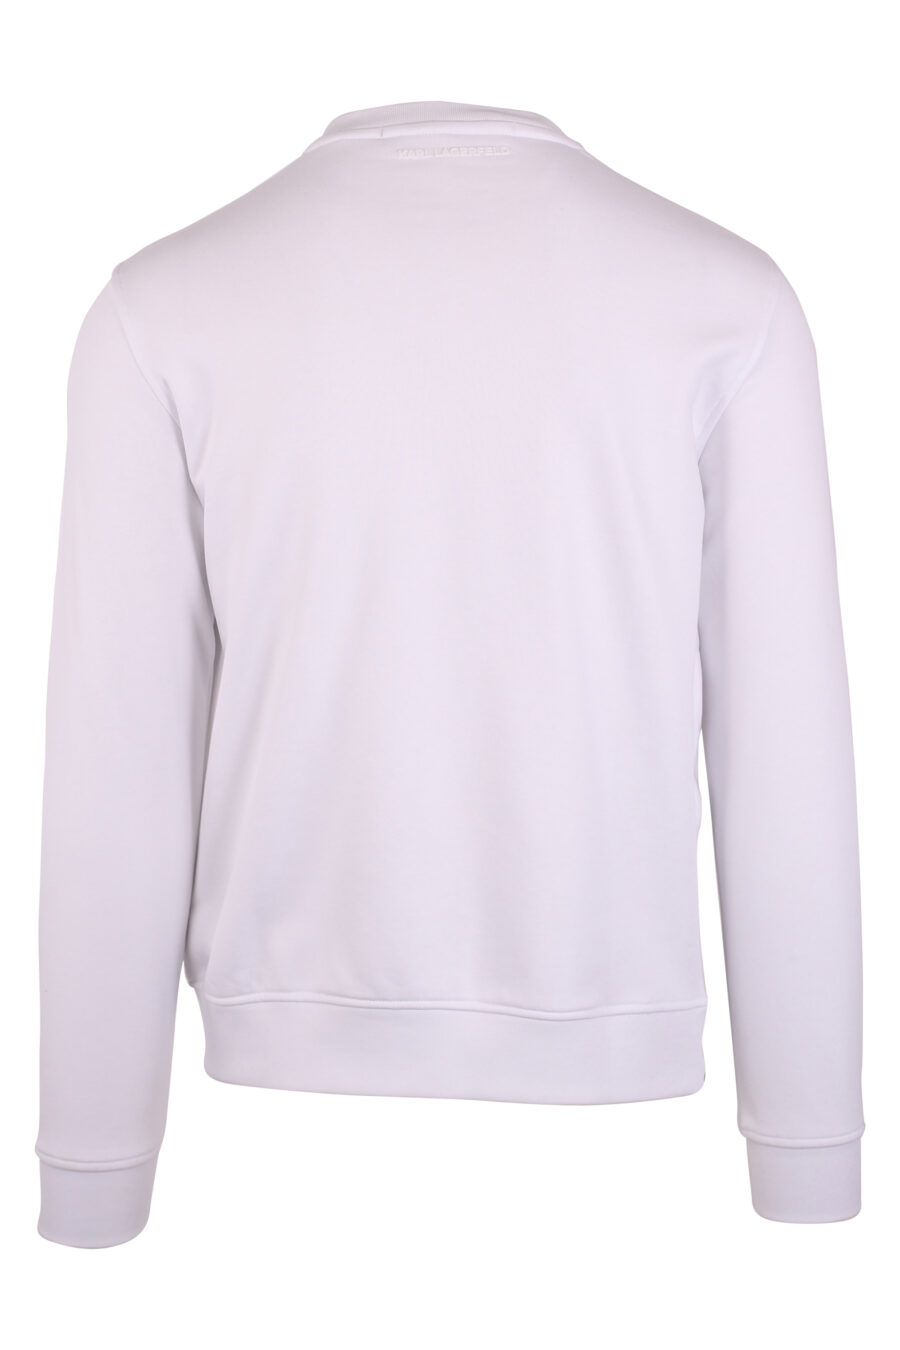 Weißes Sweatshirt mit Maxilogo "karl" in Silhouette - IMG 9477